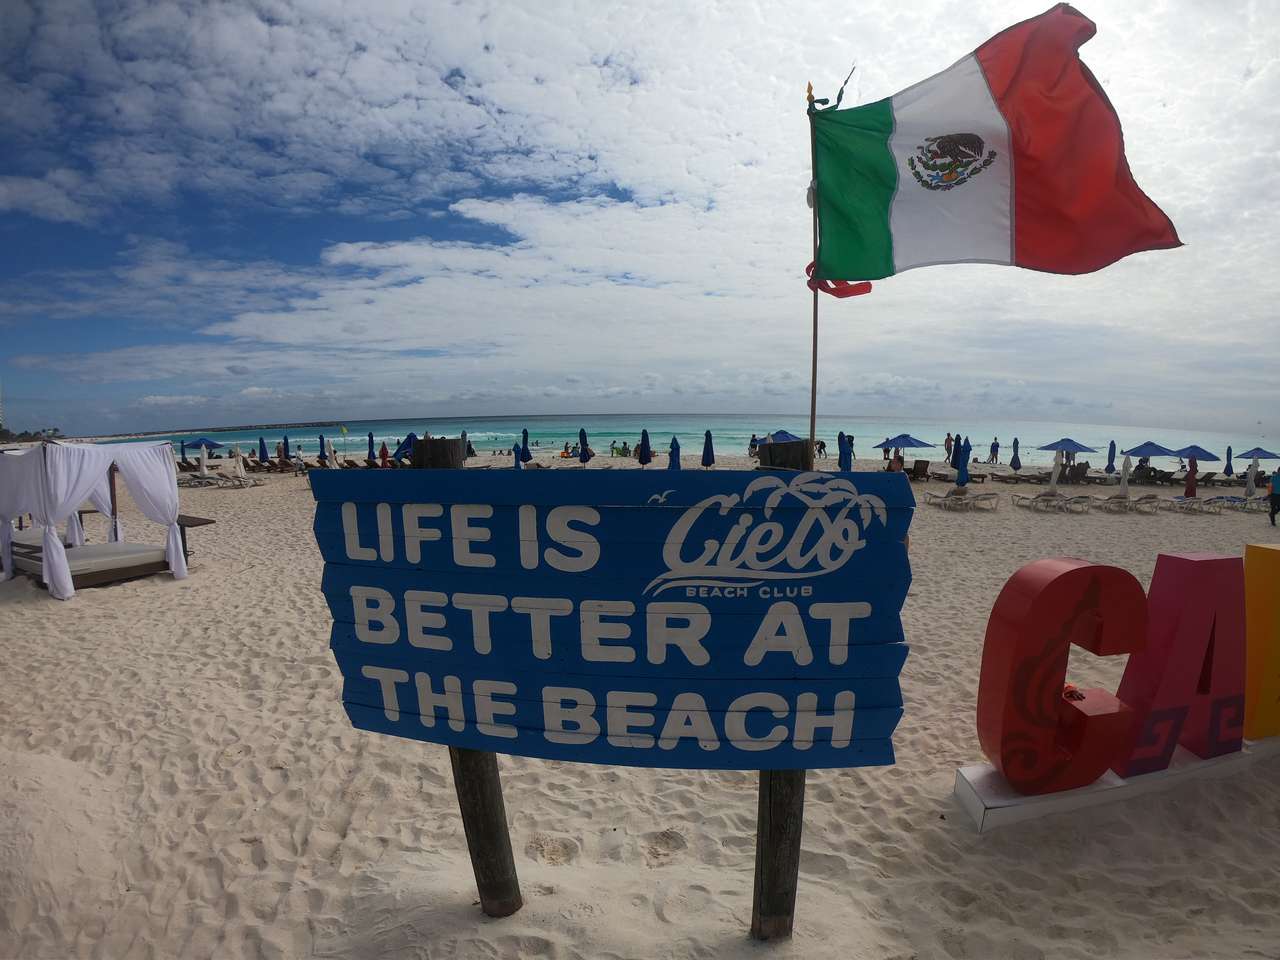 Канкун - Мексика онлайн пазл